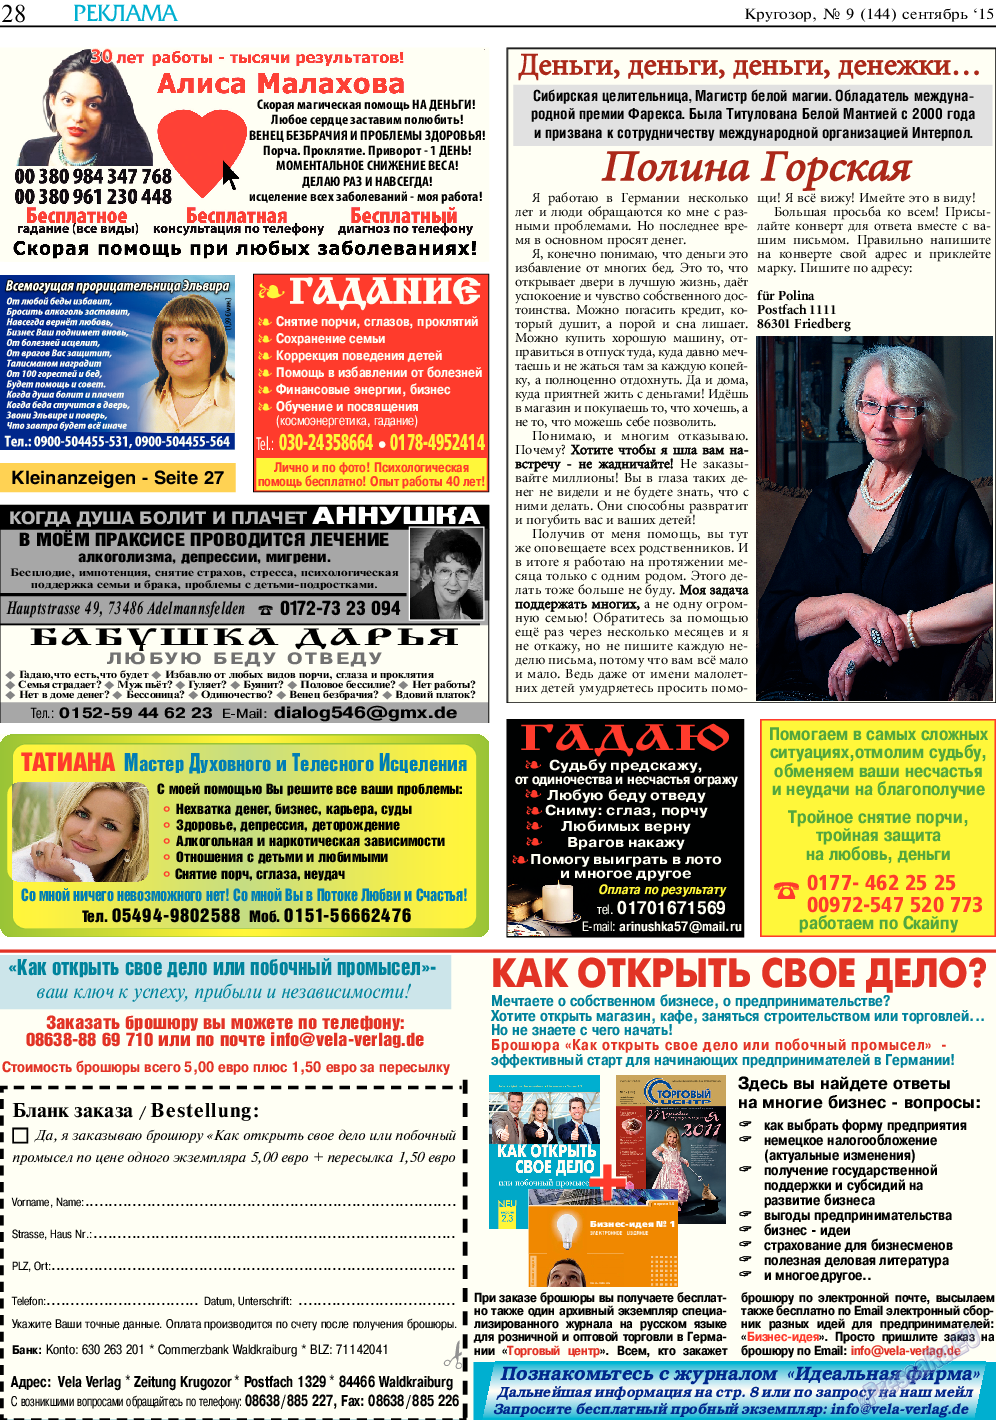 Кругозор (газета). 2015 год, номер 9, стр. 28